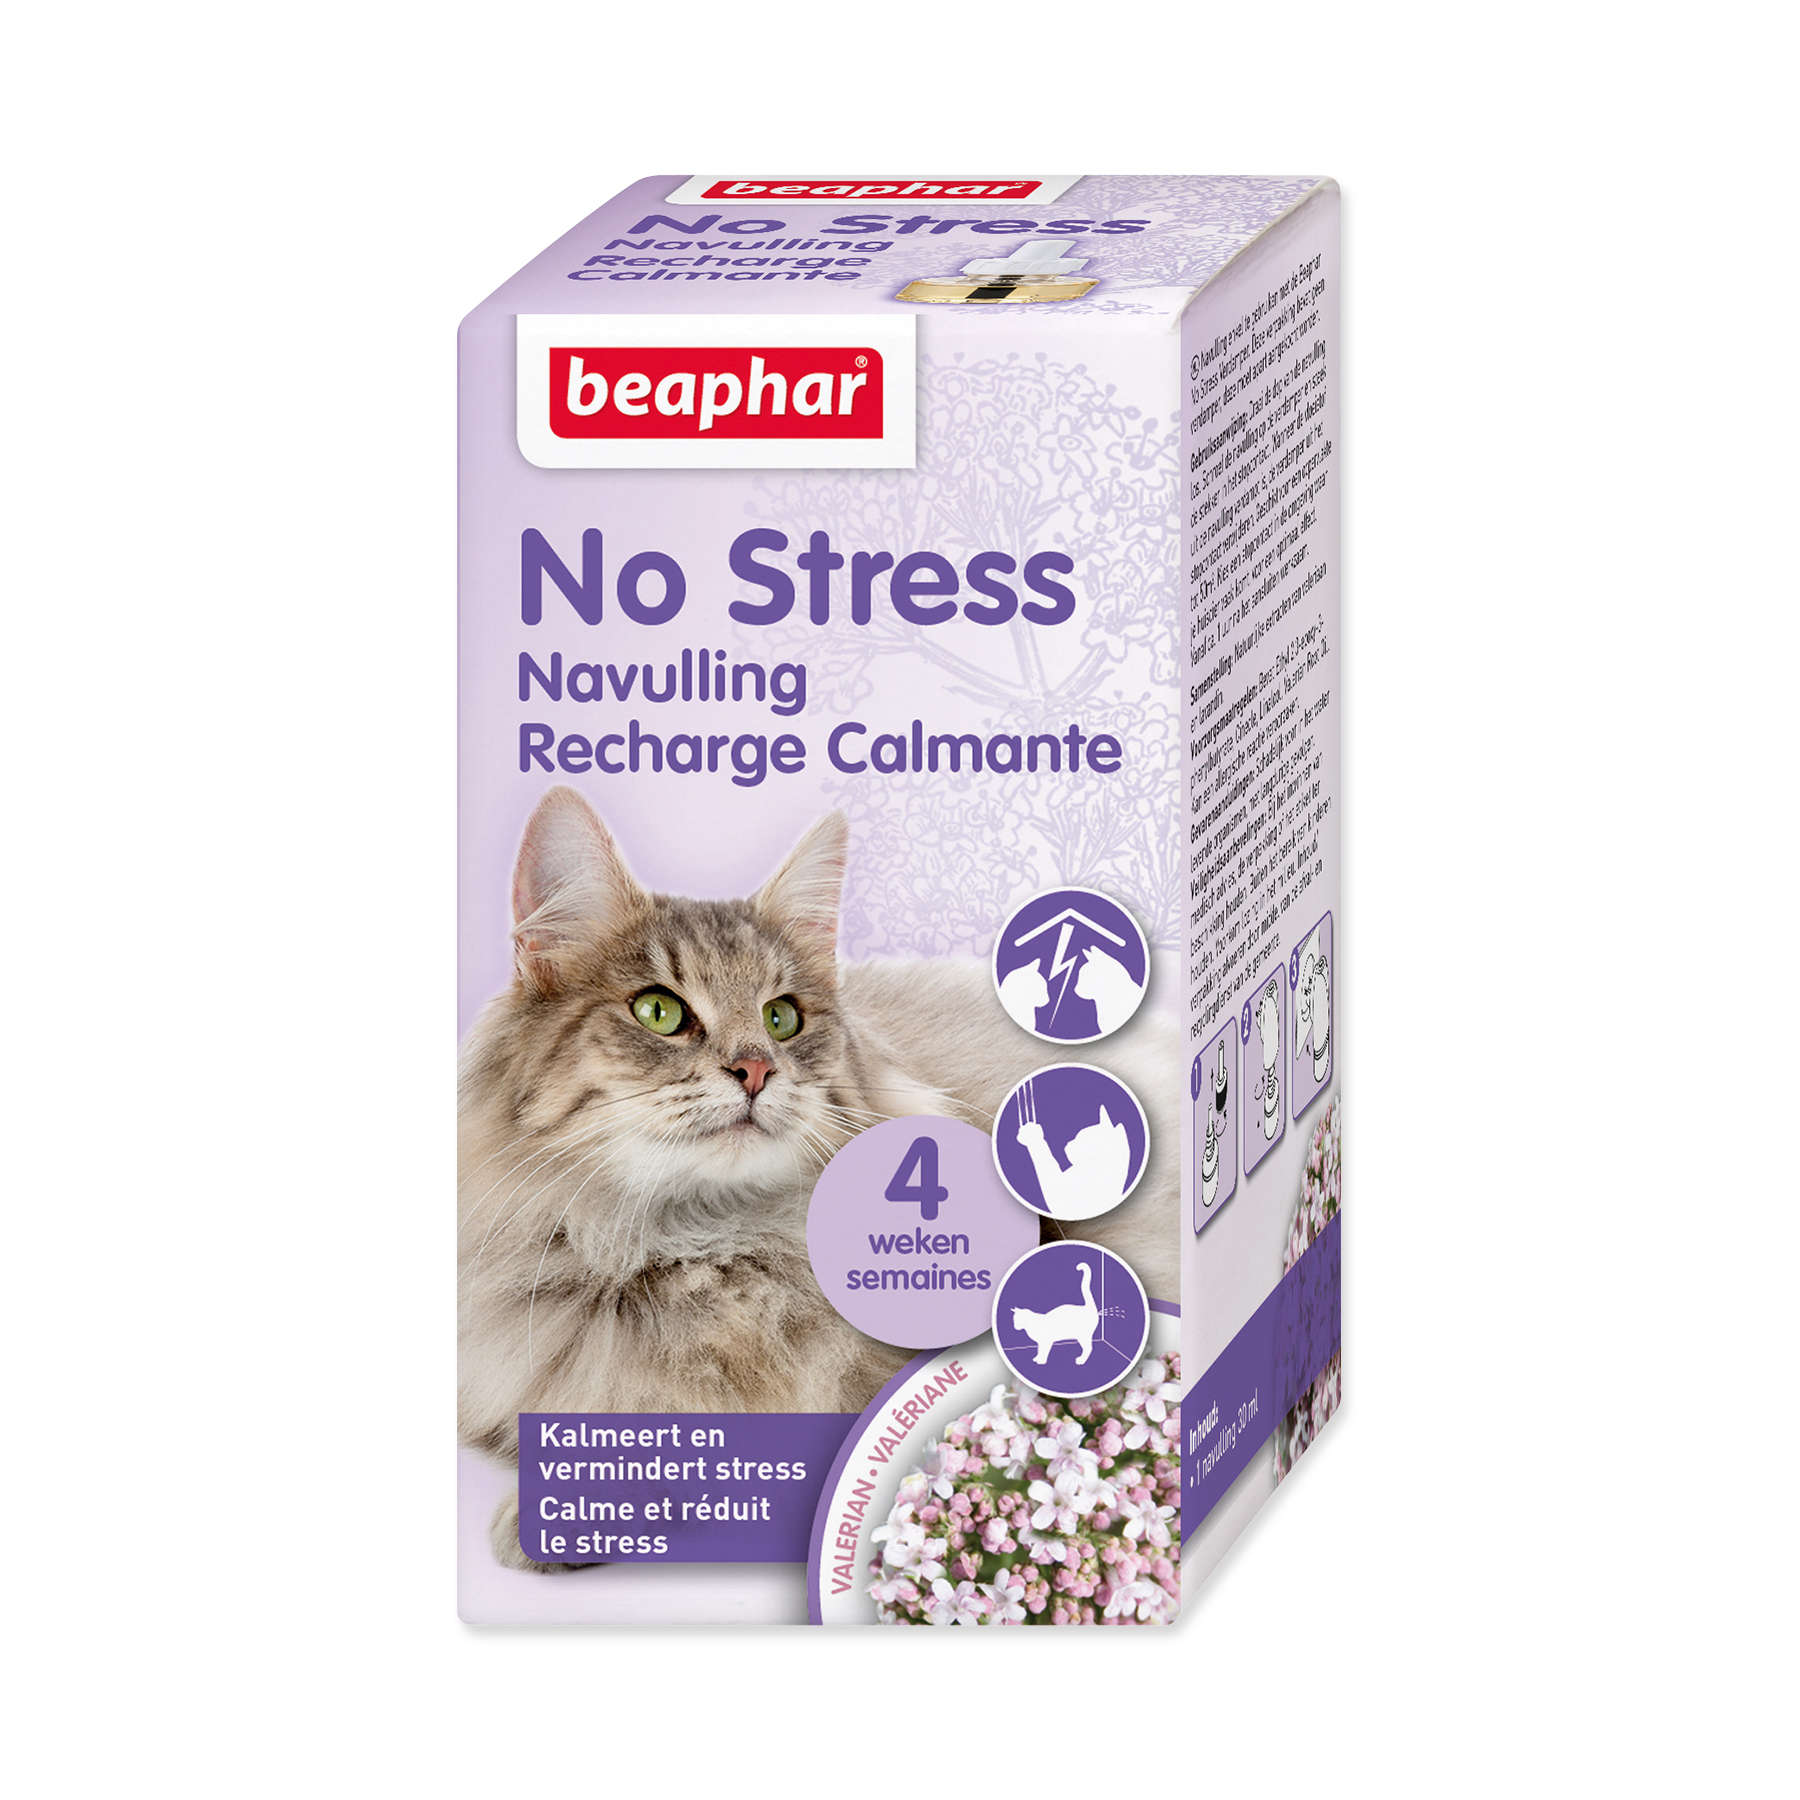 Beaphar No Stress pro kočky náhradní náplň do difuzéru 30 ml Beaphar